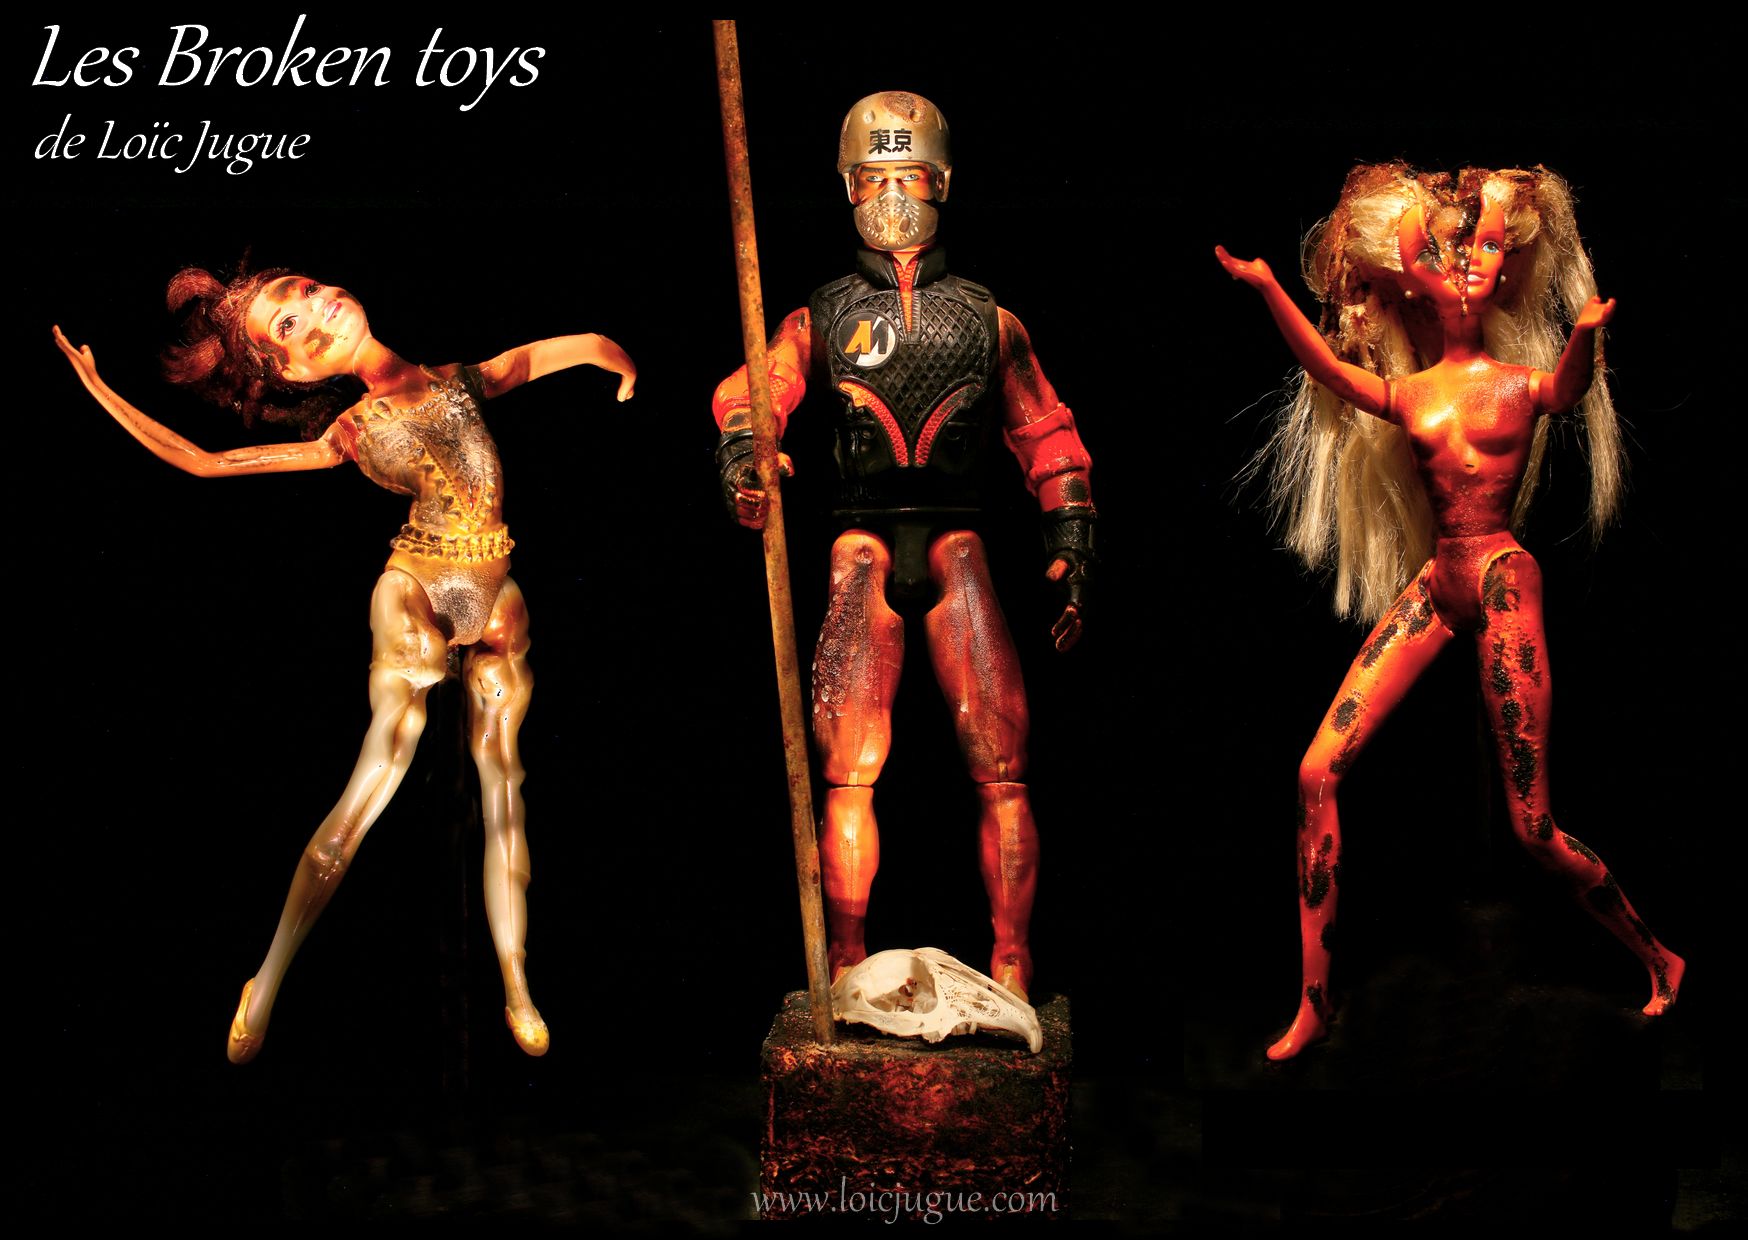 Les broken toys de Loïc Jugue:The riot